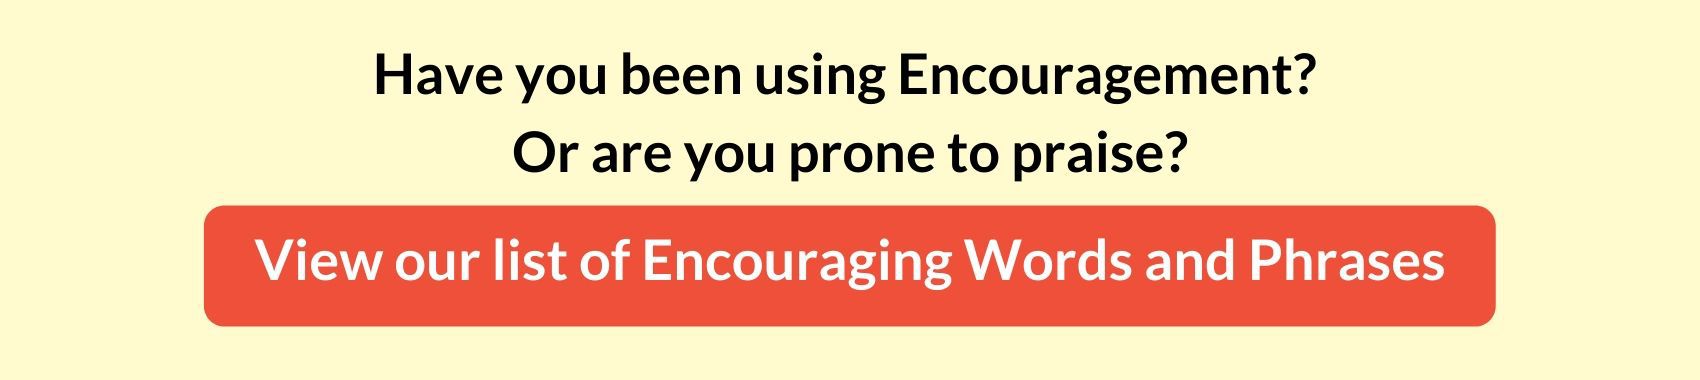 encouraging words download